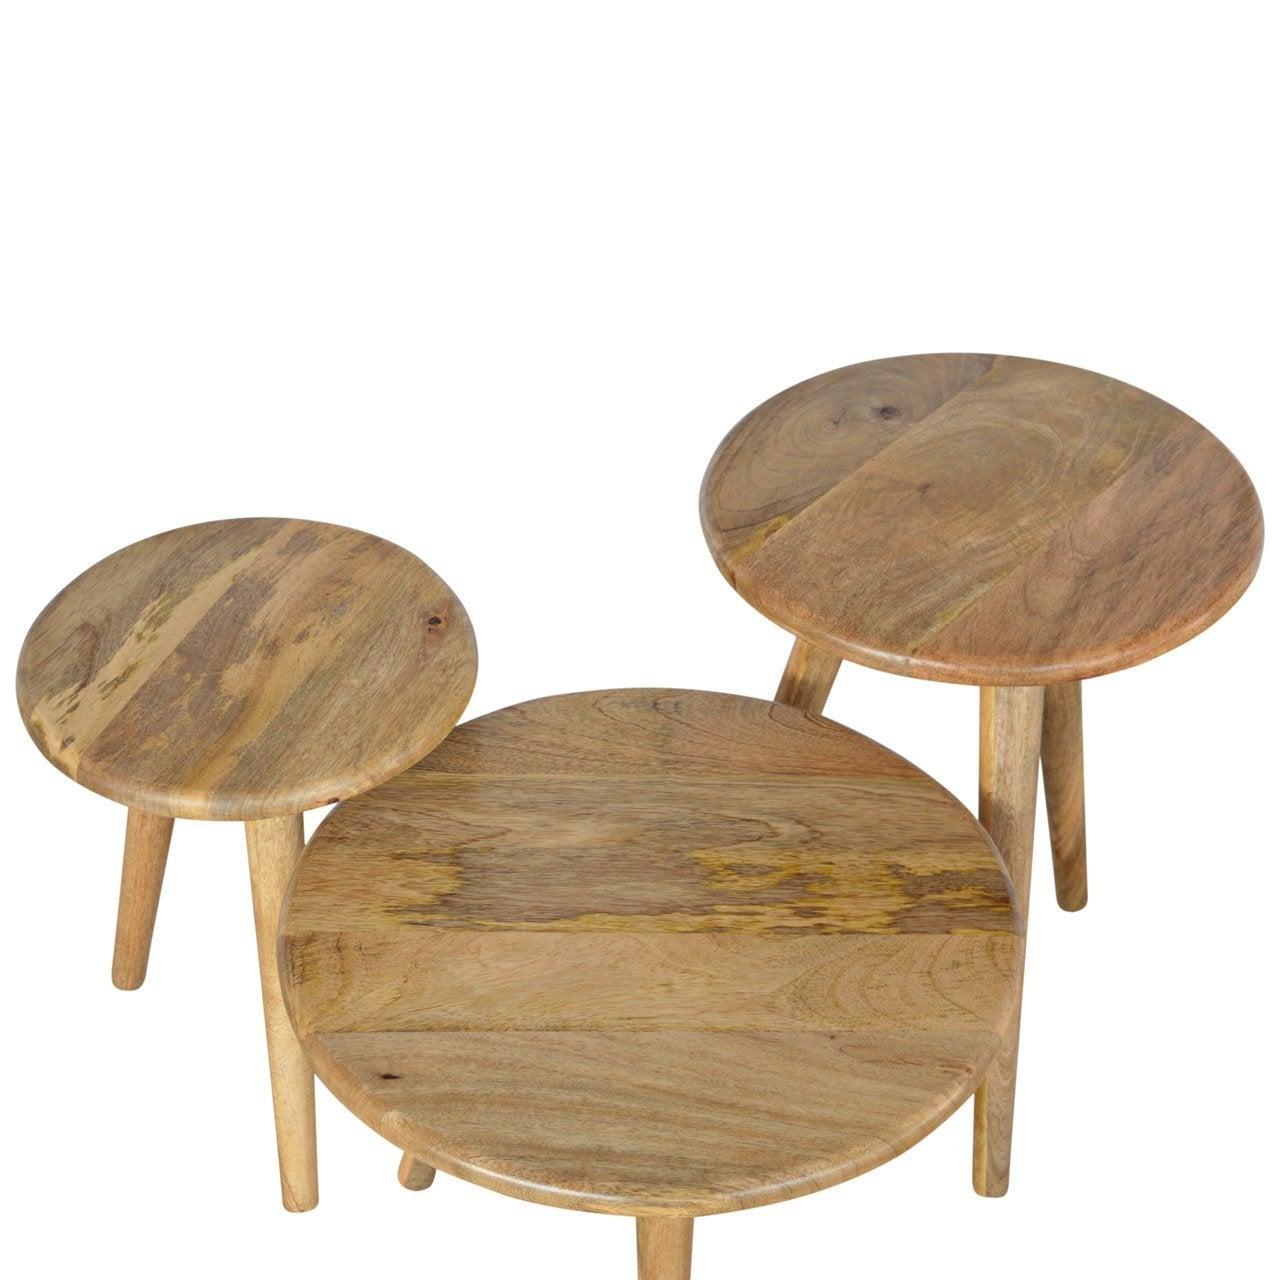 Nordic style stool set of 3 - crimblefest furniture - image 9